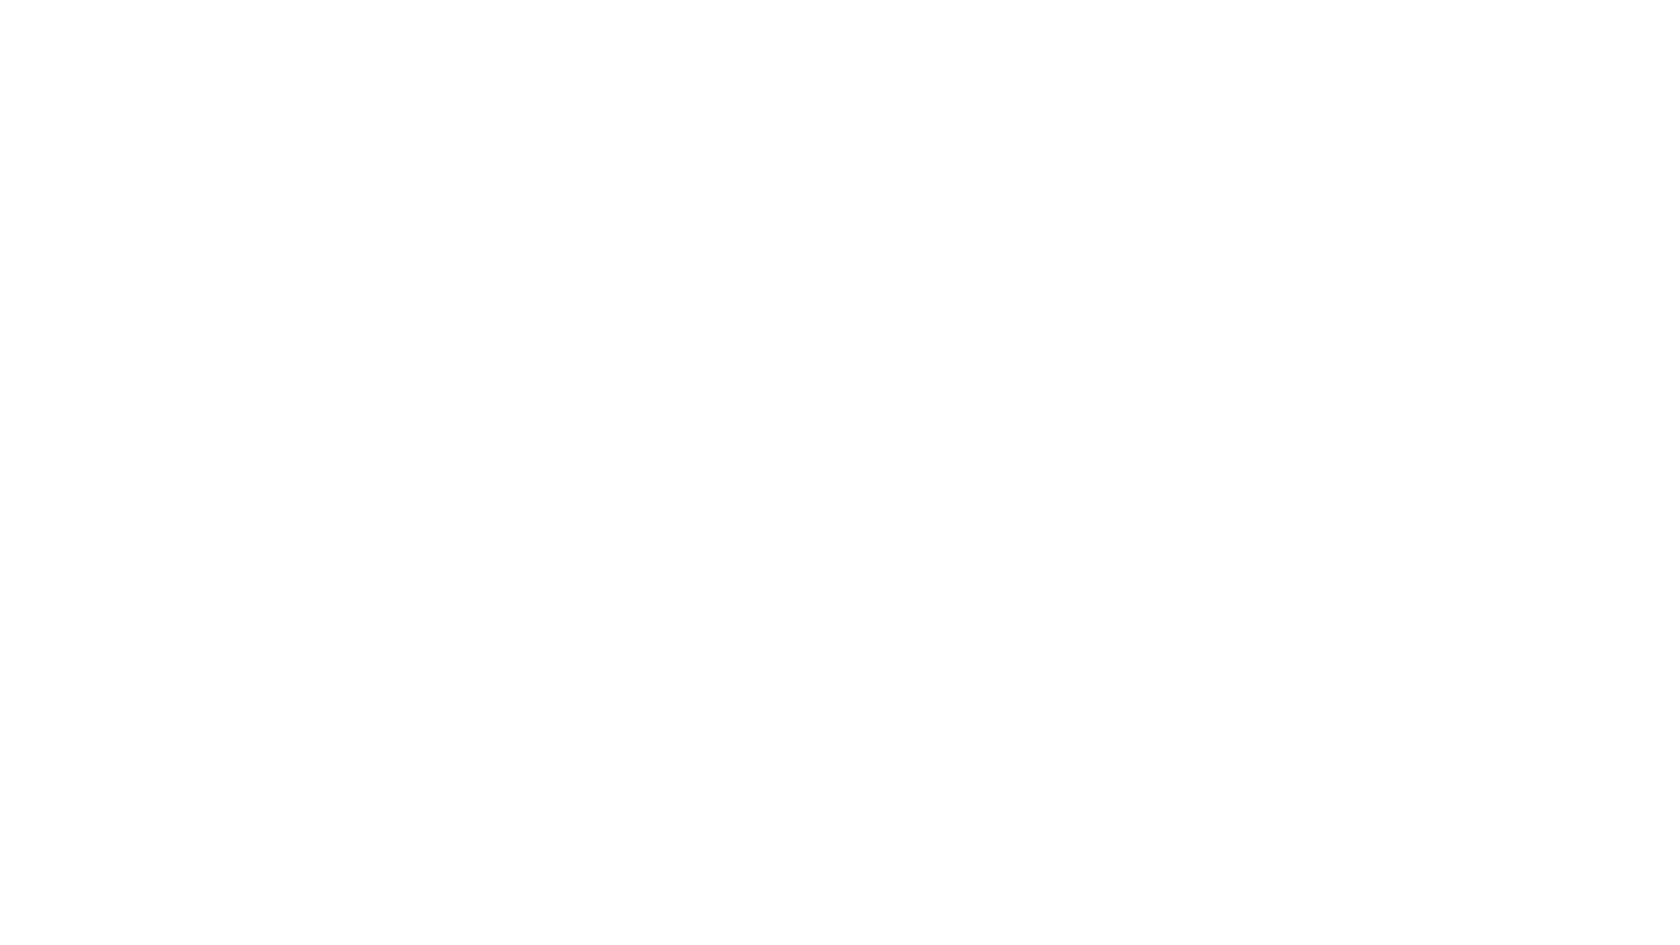 Коллаж с сайта С. В. Дёмина "Казачий Спас": богатырь Святогор барнаульского художника-иллюстратора Степана Гилёва, солнечное голубое небо и природа с горами и лесом по краям на переднем плане. Автор коллажа: К. А. Захарова